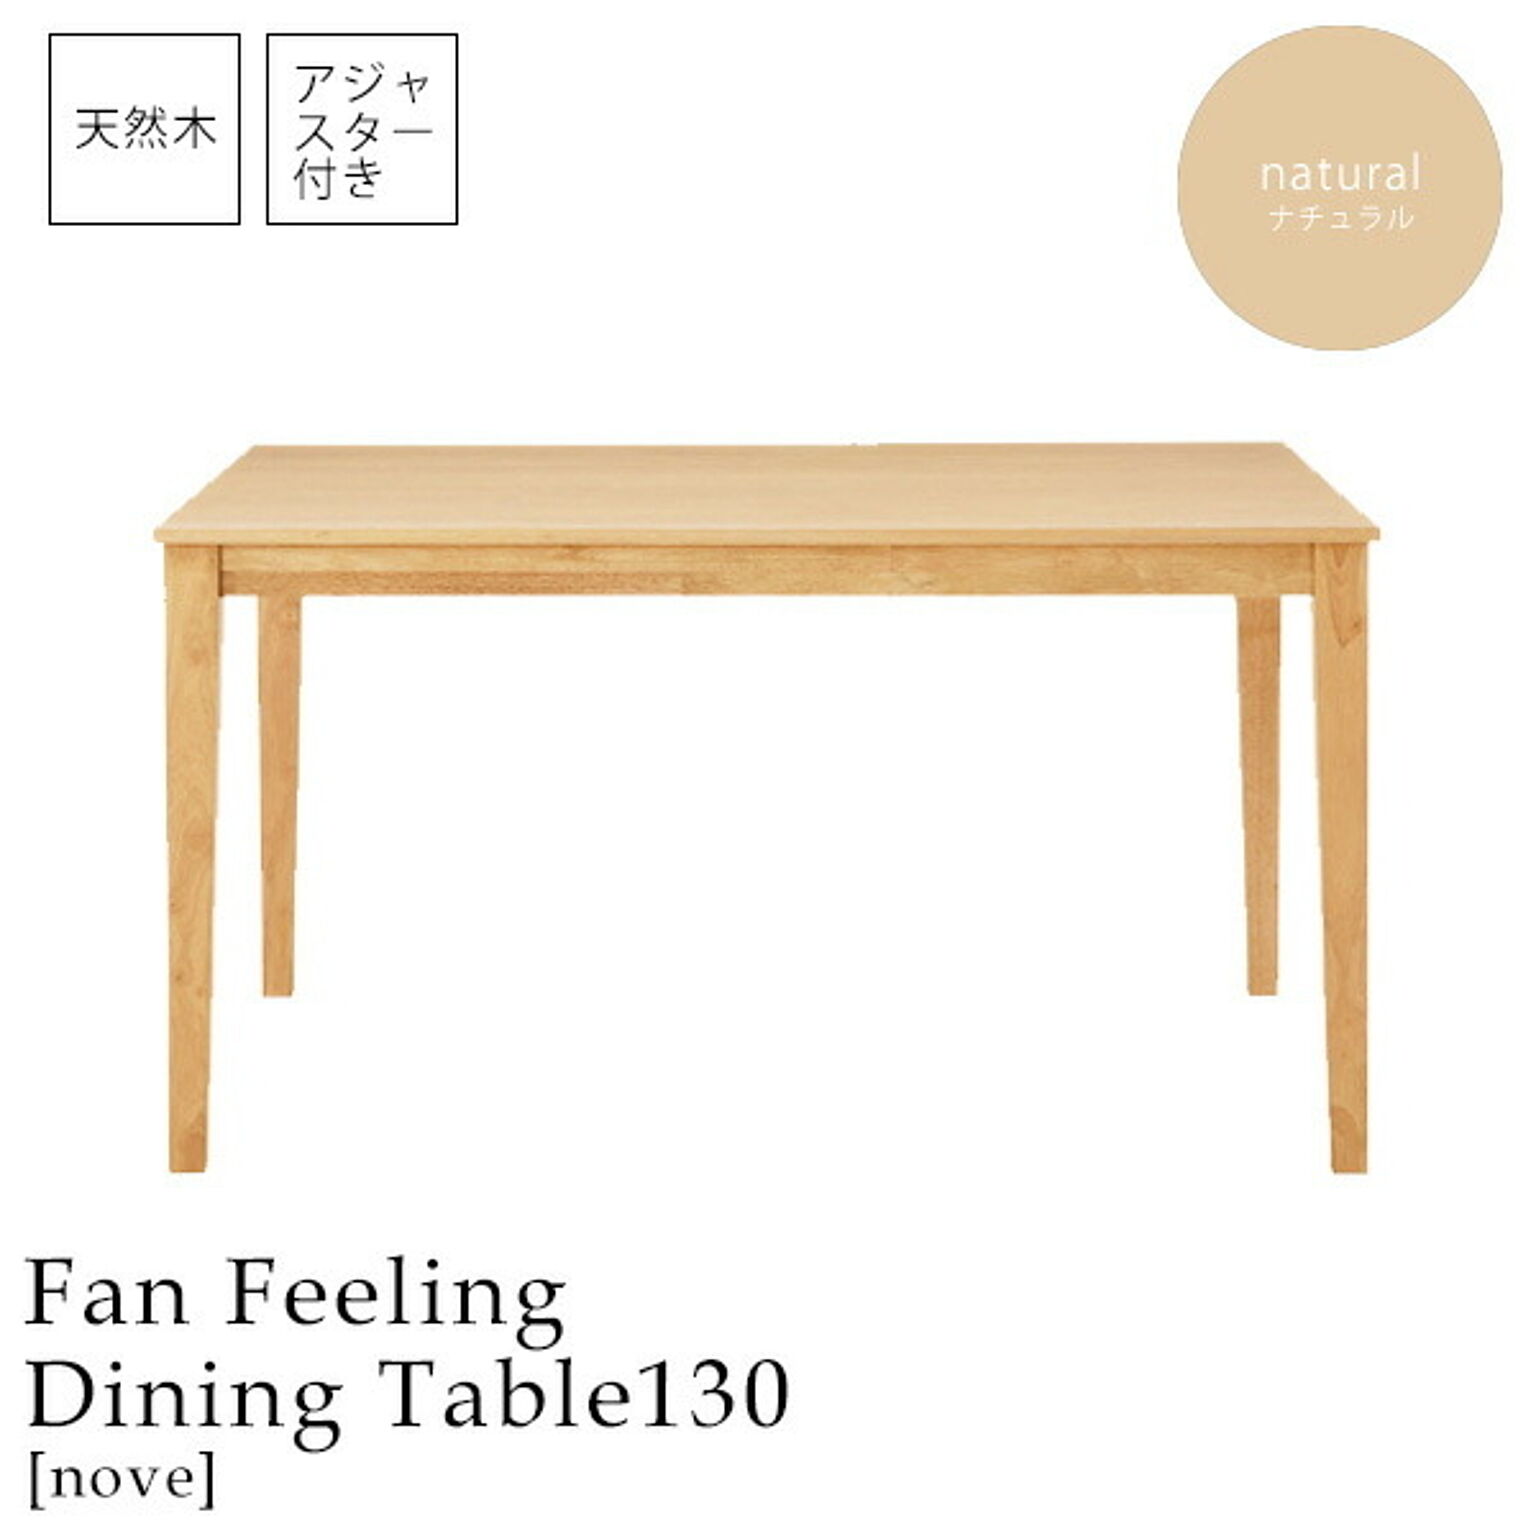 ナチュラル ダイニングテーブル 食卓 幅130 つくえ 机 【nove】 (ナチュラル) 木目 北欧 カフェ シンプル 